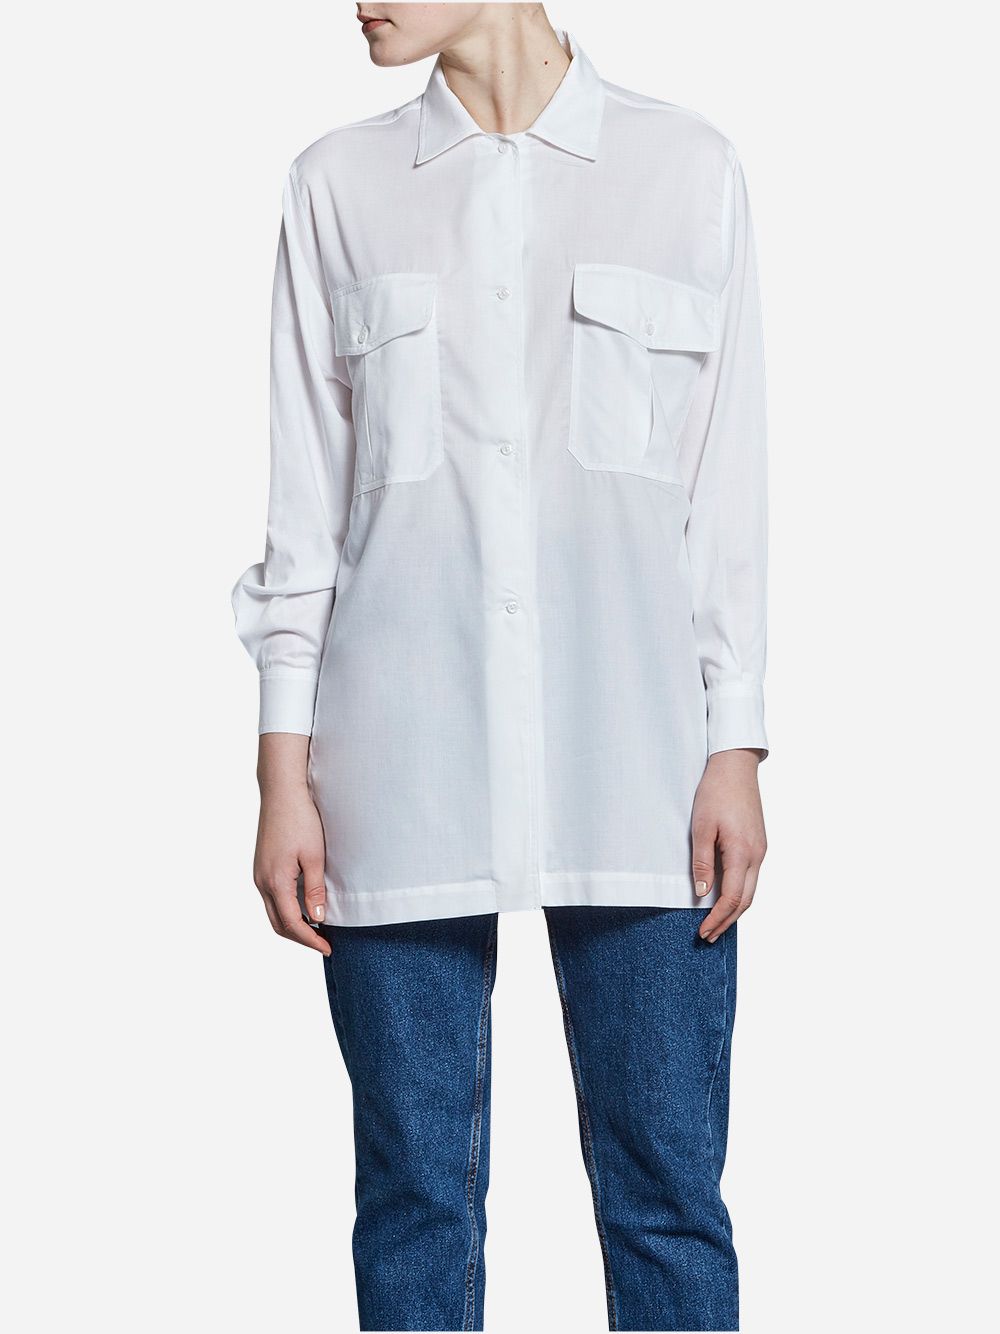 Camisa Branca Safari com Cinto | A-line Clothing